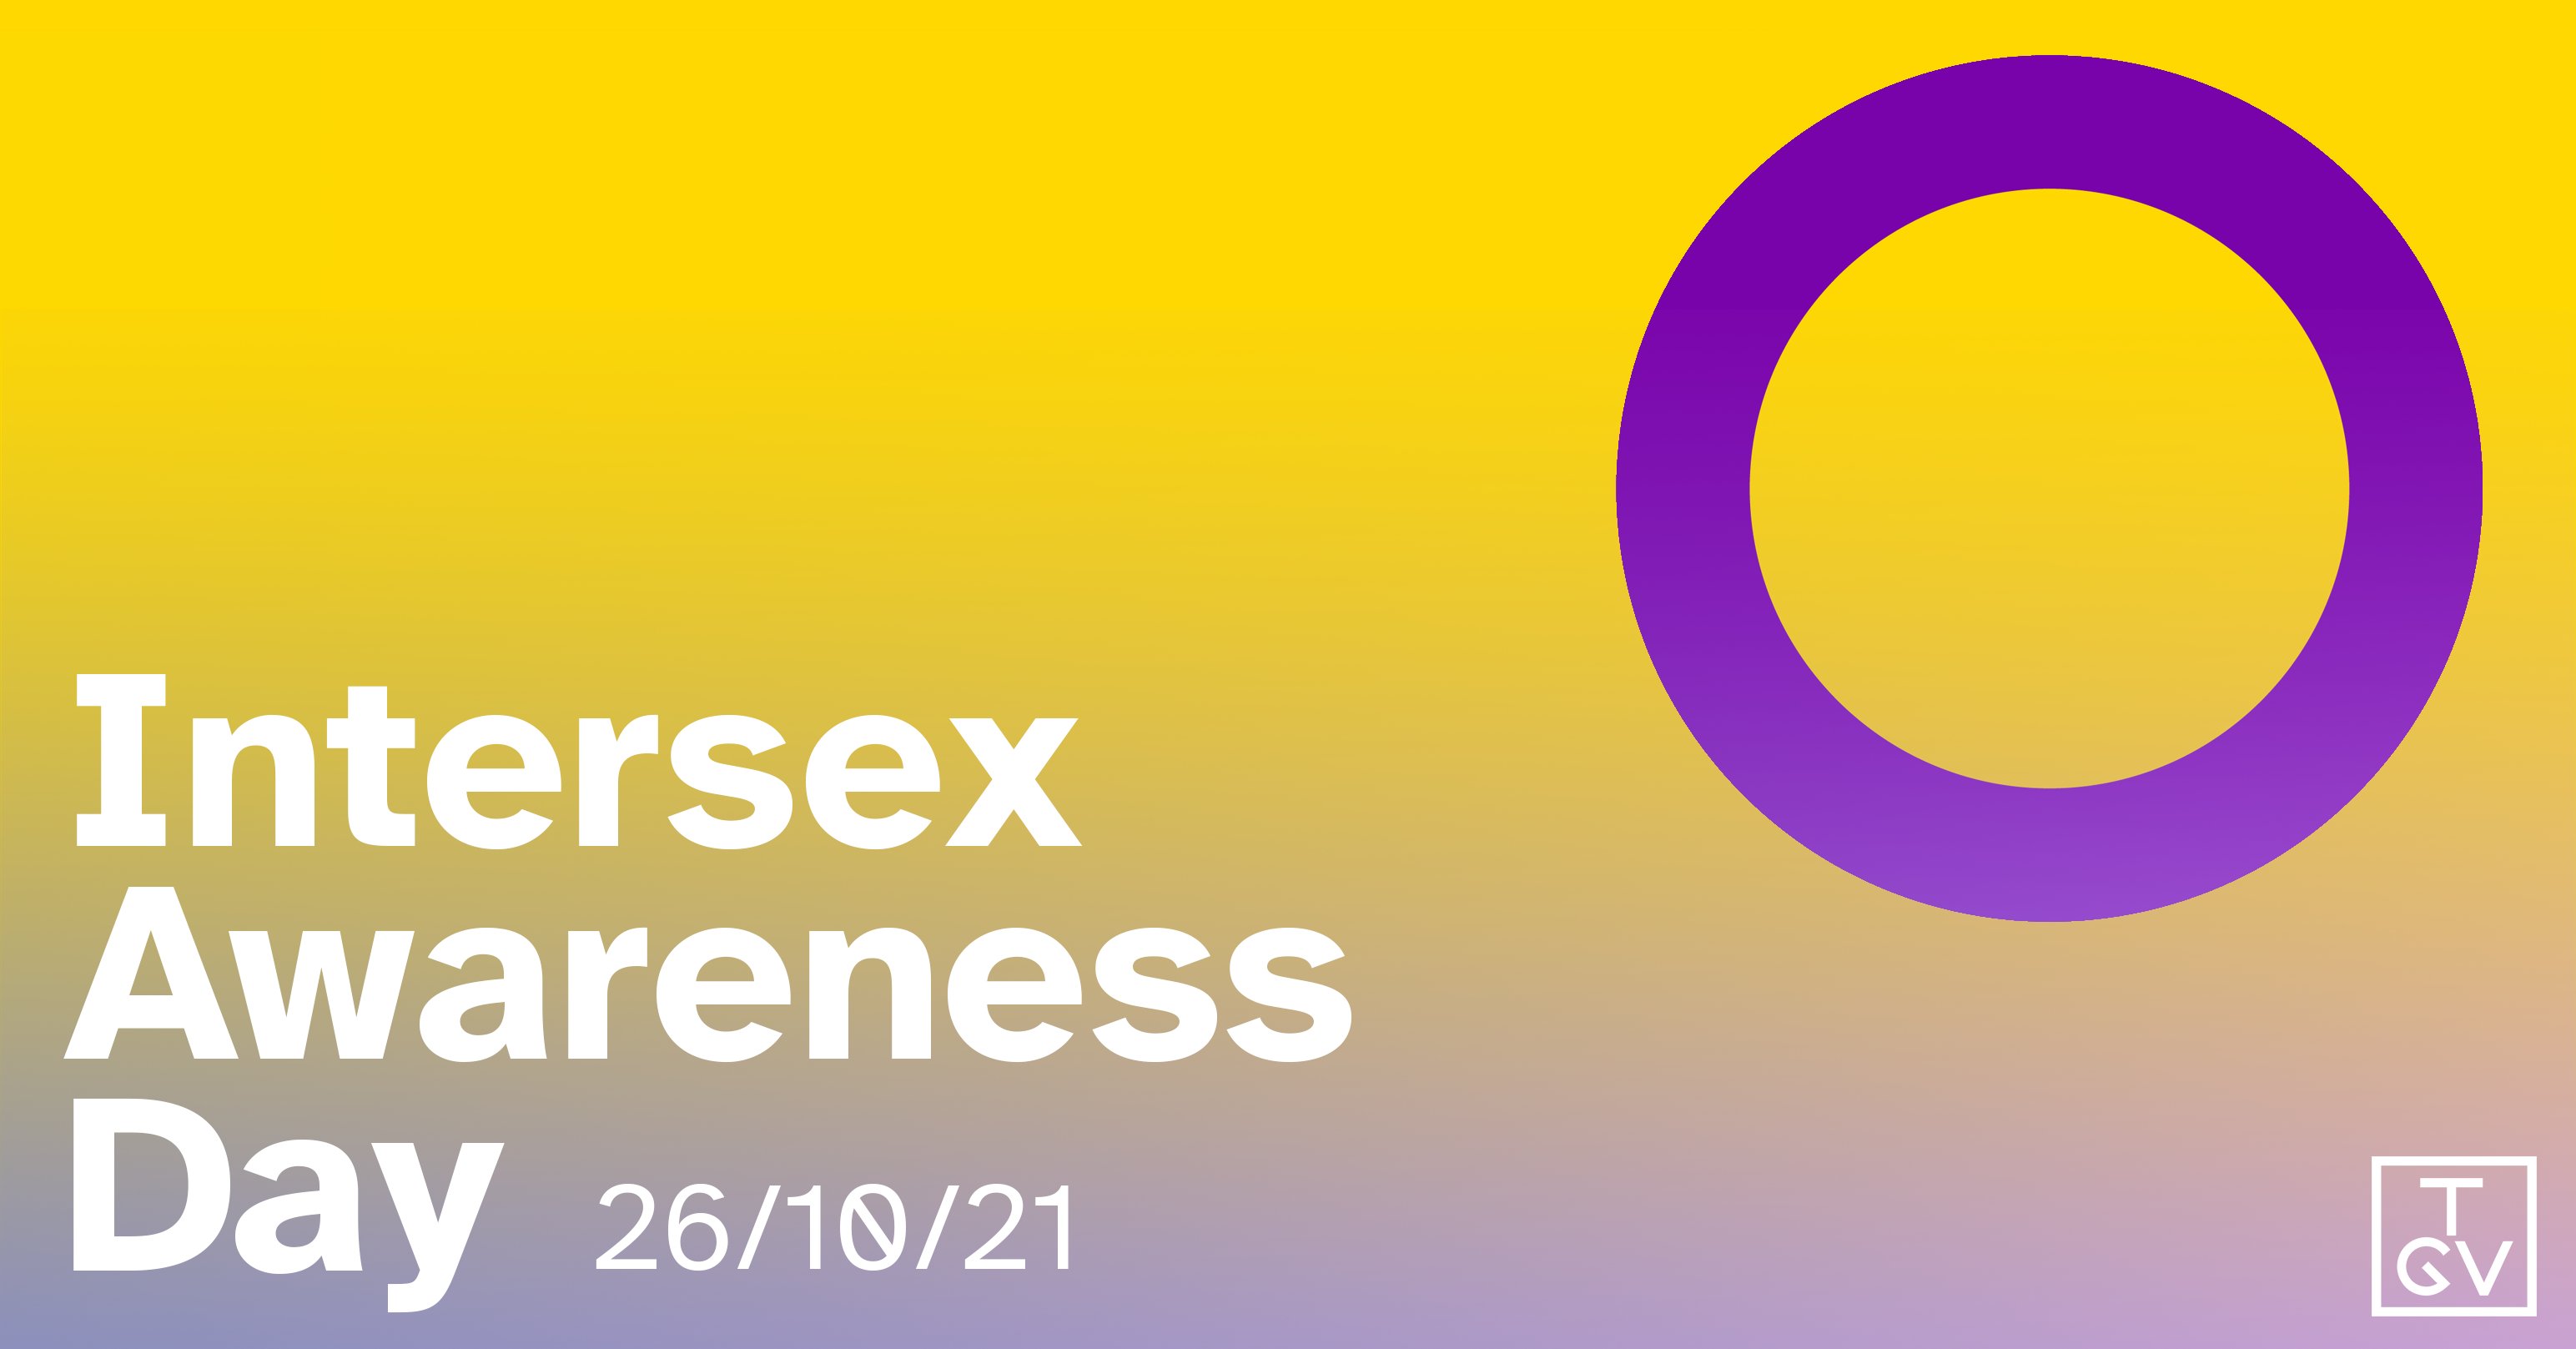 Ngày Nhận Thức Về Giới Trung Gian (Intersex Awareness Day) là một ngày quan trọng, giúp chúng ta nâng cao nhận thức, hiểu biết và tôn trọng sự đa dạng của con người. TGV là một tổ chức chuyên về những vấn đề liên quan đến giới tính và đang nỗ lực để thúc đẩy sự thay đổi trong xã hội. Bấm vào hình ảnh liên quan để cùng khám phá thế giới đầy ý nghĩa của chúng tôi!